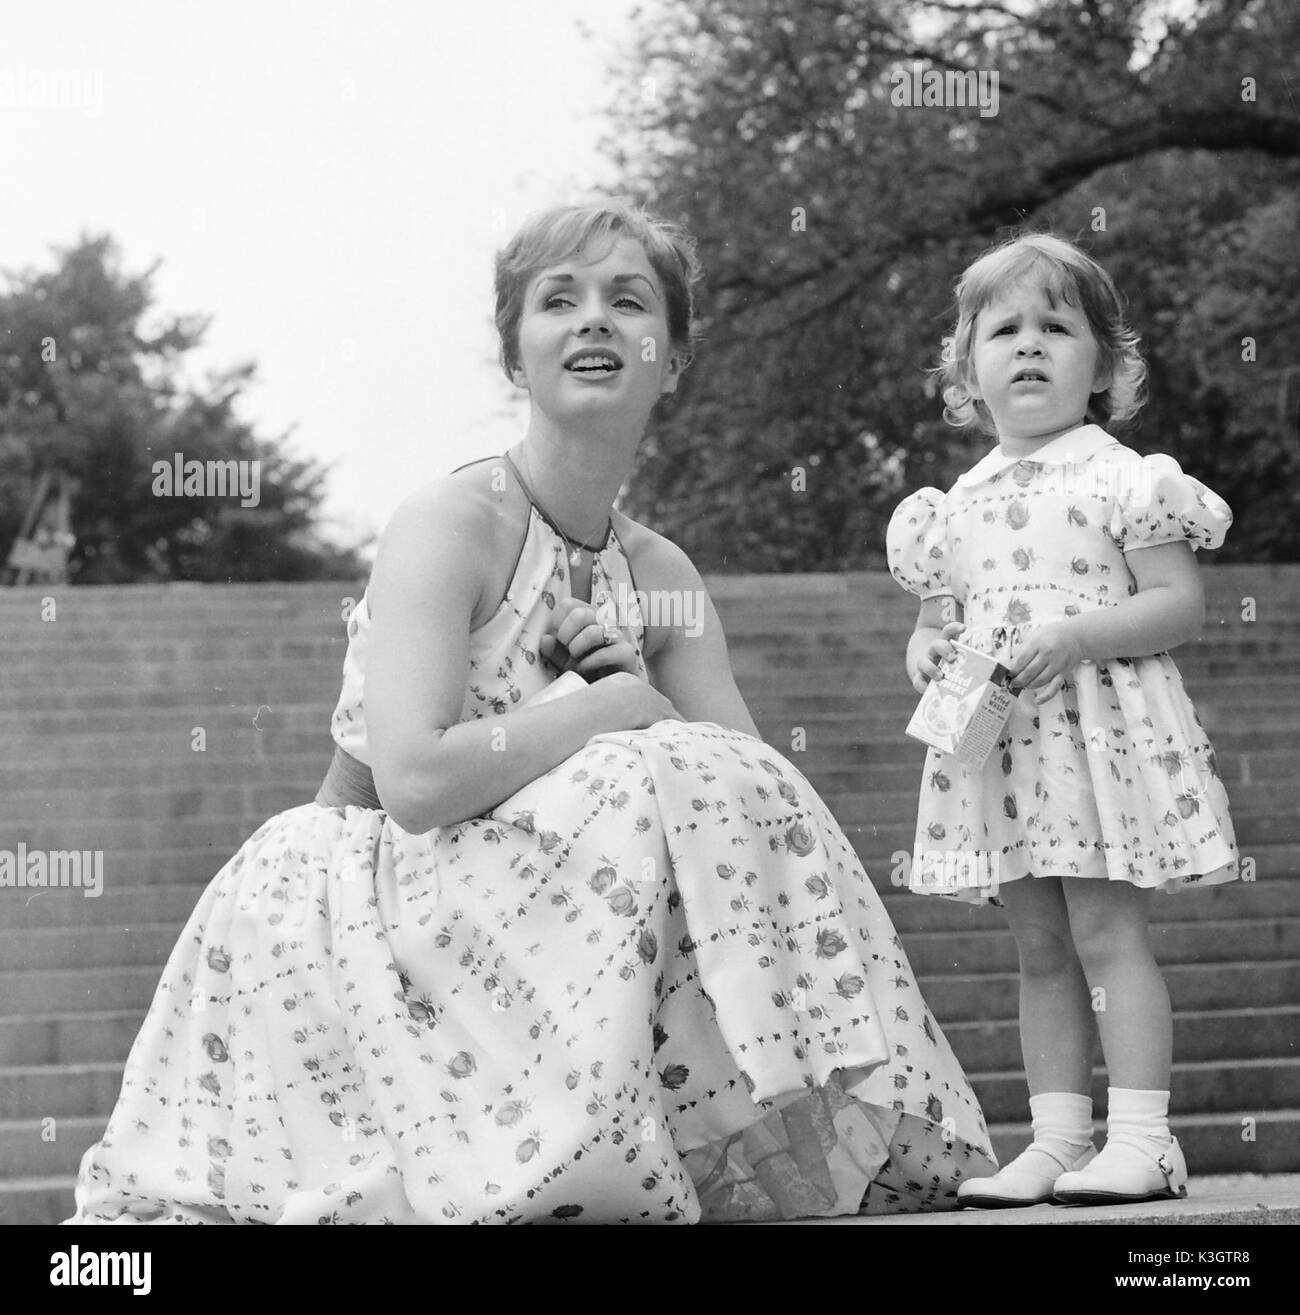 L'attrice Debbie Reynolds con sua figlia CARRIE dal matrimonio ad attore Eddie Fisher, nel Central Park di New York. c1960 Foto Stock